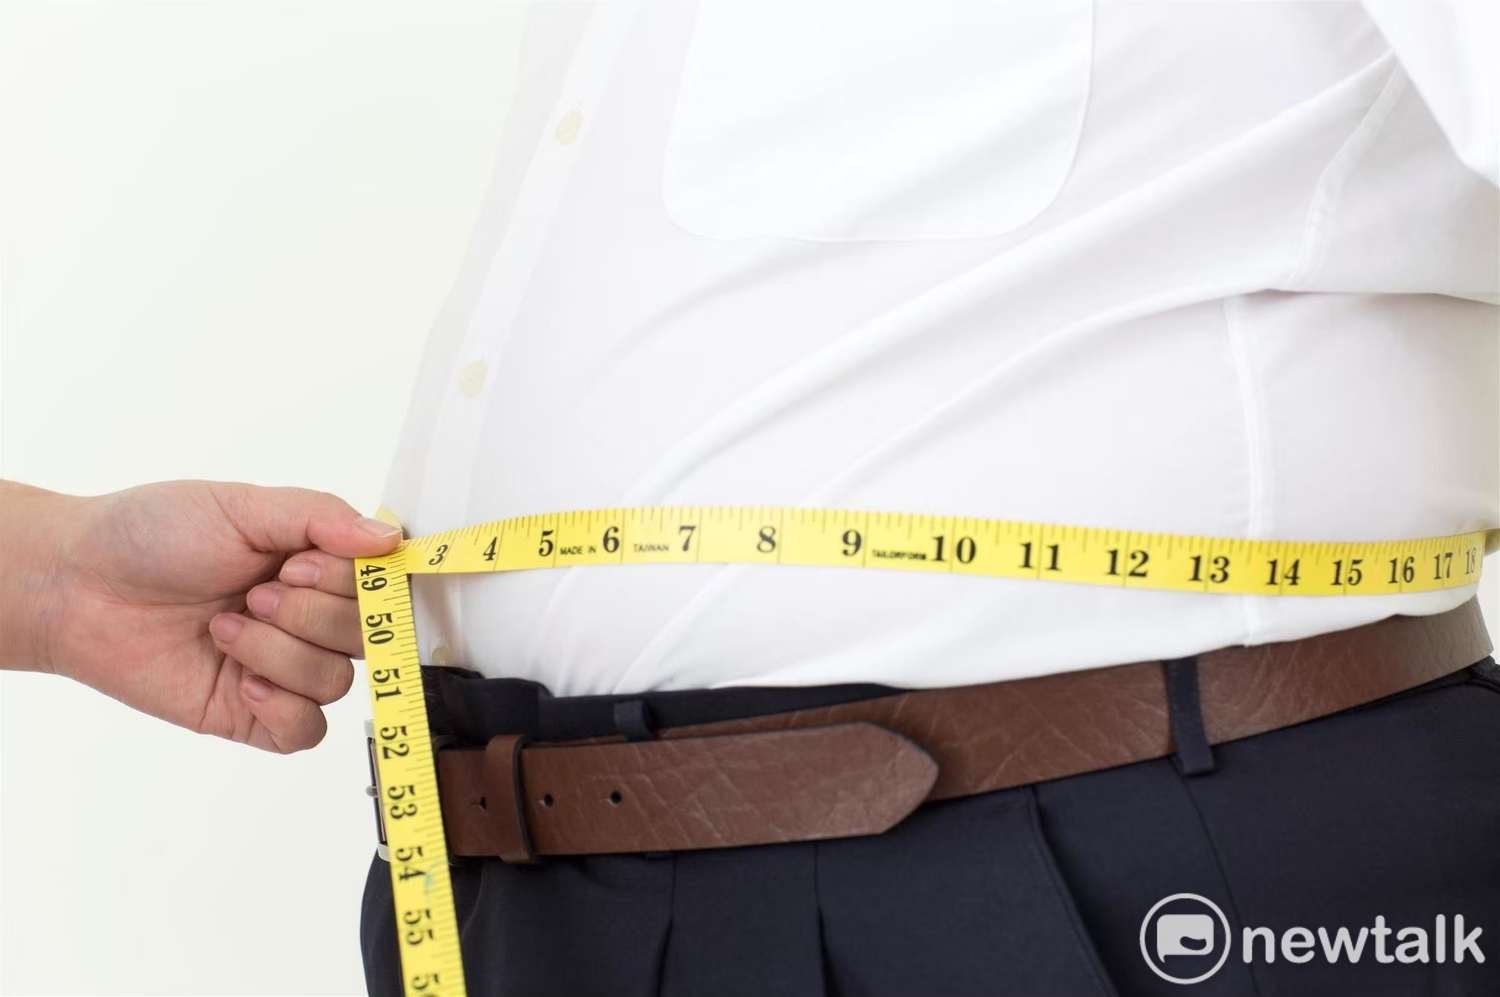 [新聞]中國肥胖者數量超過美國 科學家警告「非常